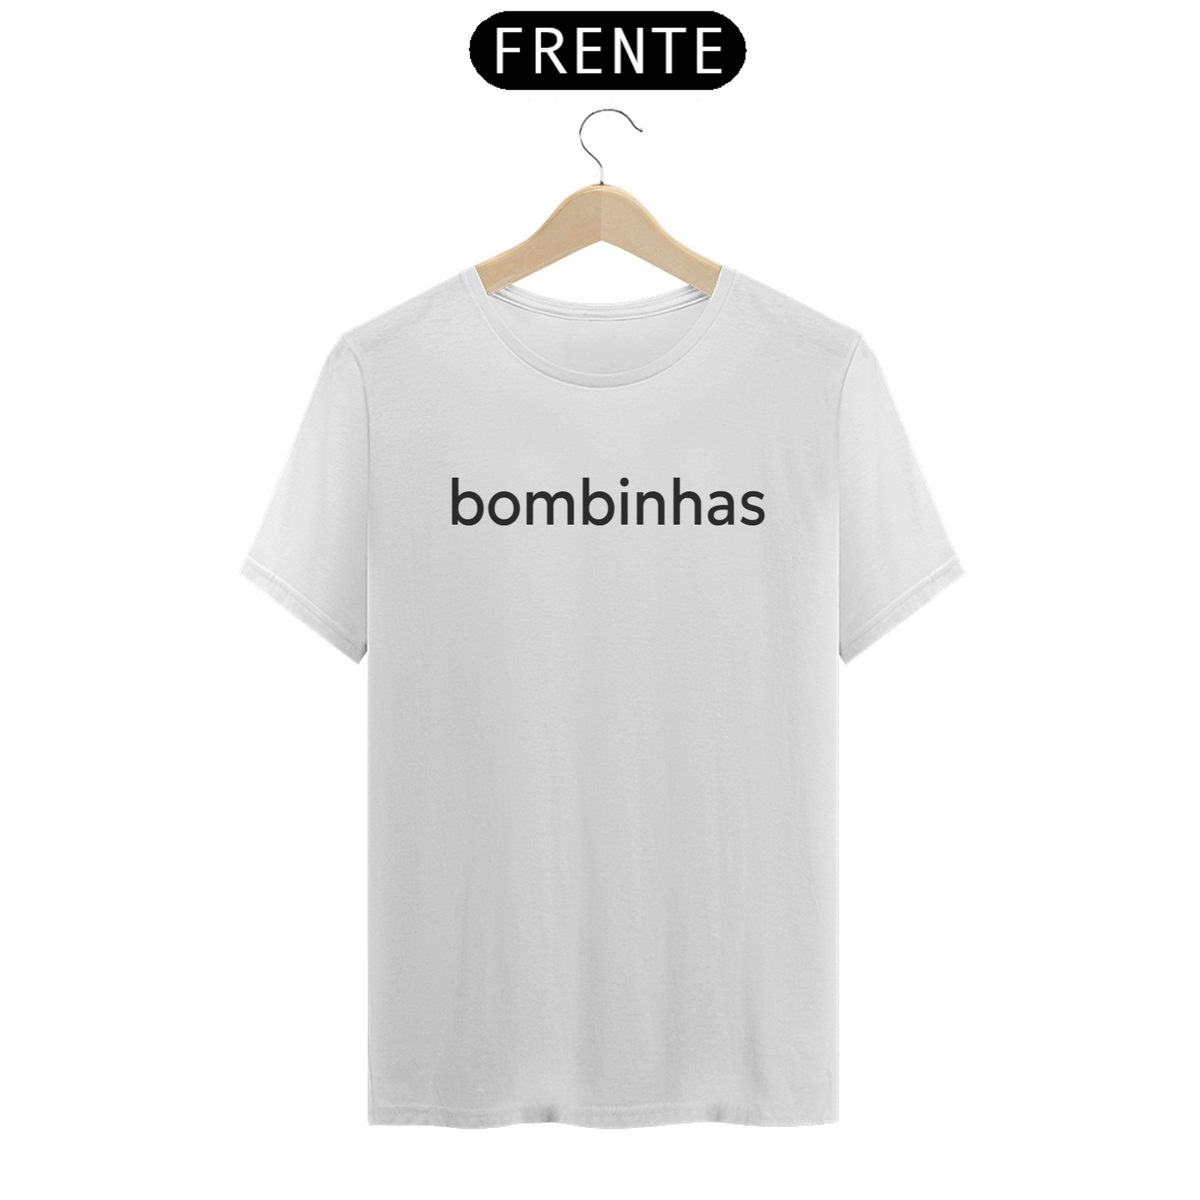 Nome do produto: Camiseta Bombinhas Classic pt